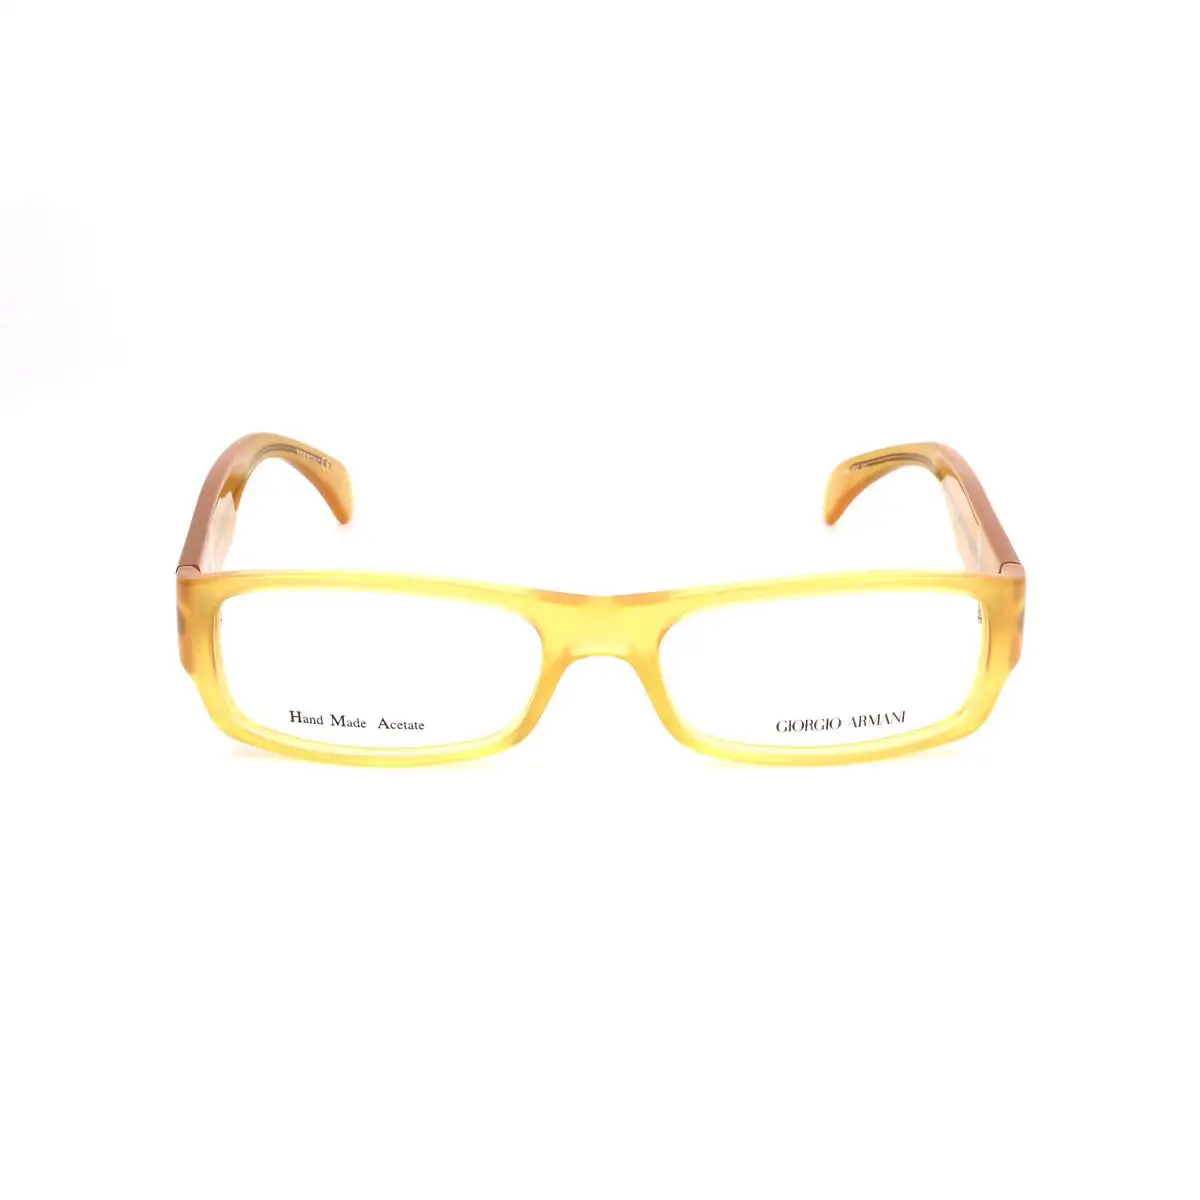 Monture de lunettes homme armani ga 806 pd9 o 53 mm jaune_2571. DIAYTAR SENEGAL - Votre Destination pour un Shopping Unique. Parcourez notre catalogue et trouvez des articles qui vous inspirent et vous édifient.